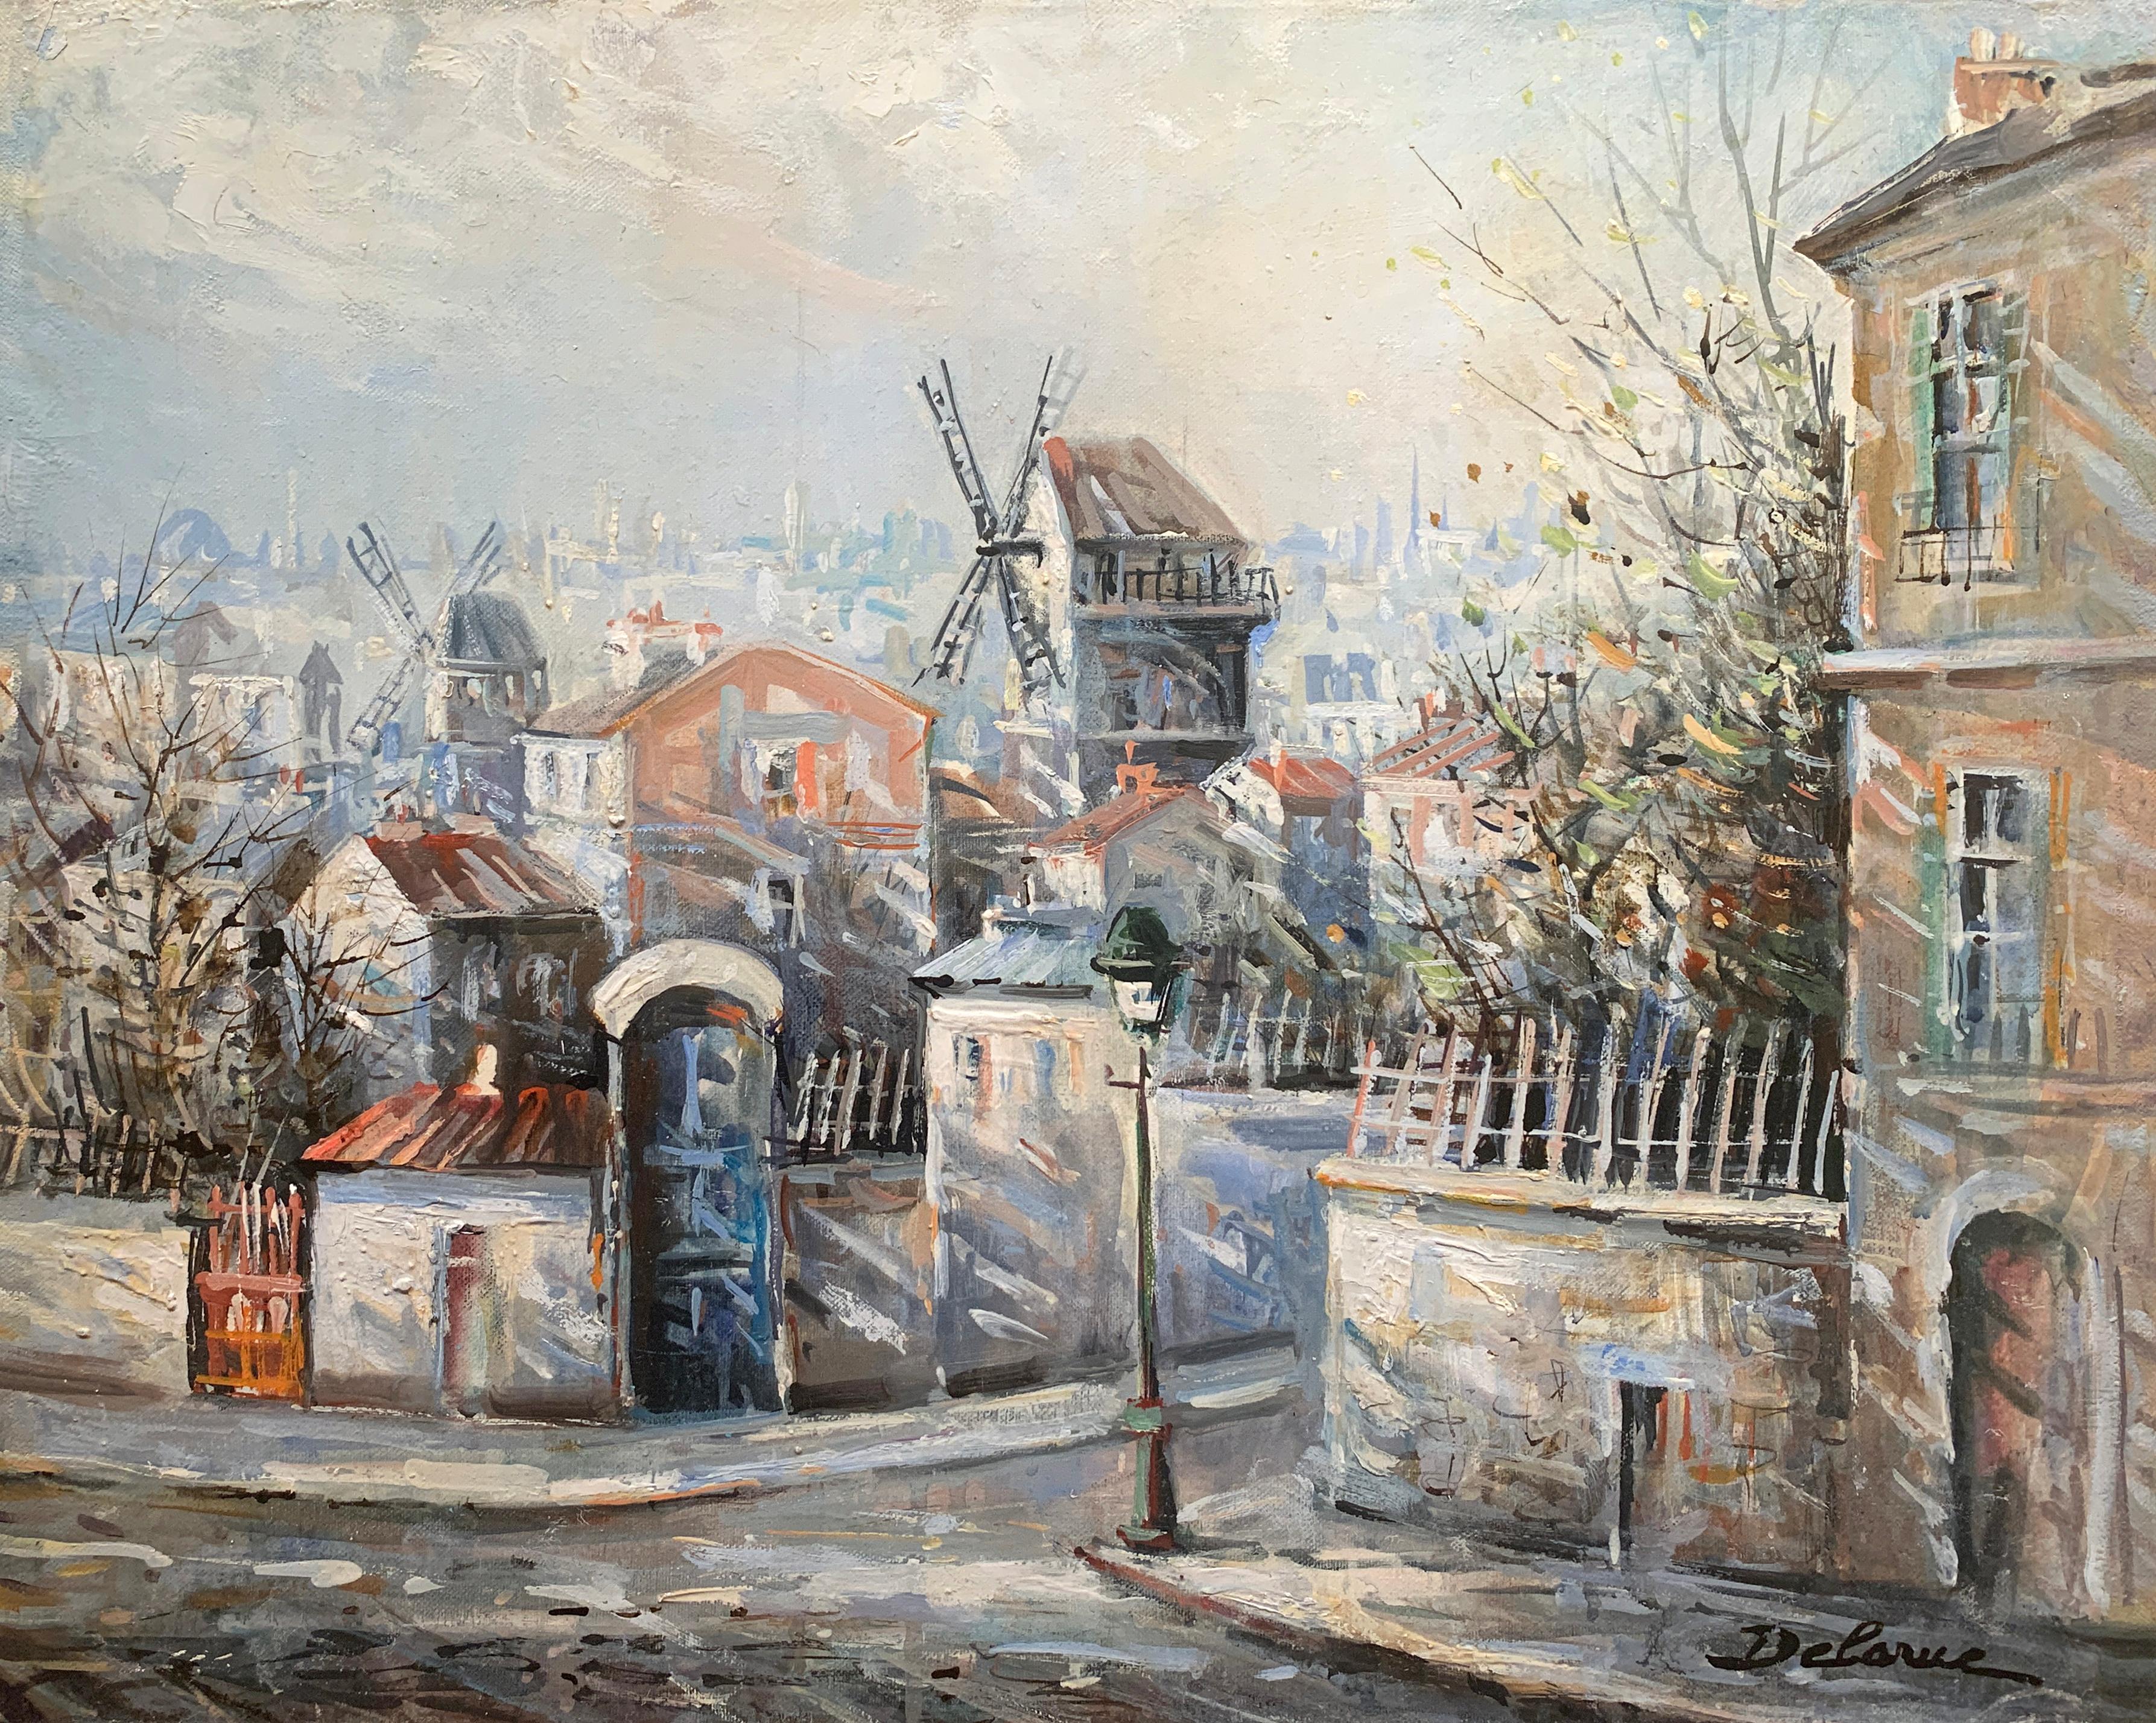 Lucien Delarue est connu dans le monde entier comme un artiste qui capture fidèlement l'atmosphère romantique de Paris. Son célèbre sujet des " toits de Montmarte ", ainsi que d'autres scènes parisiennes, complètent ses représentations romantiques